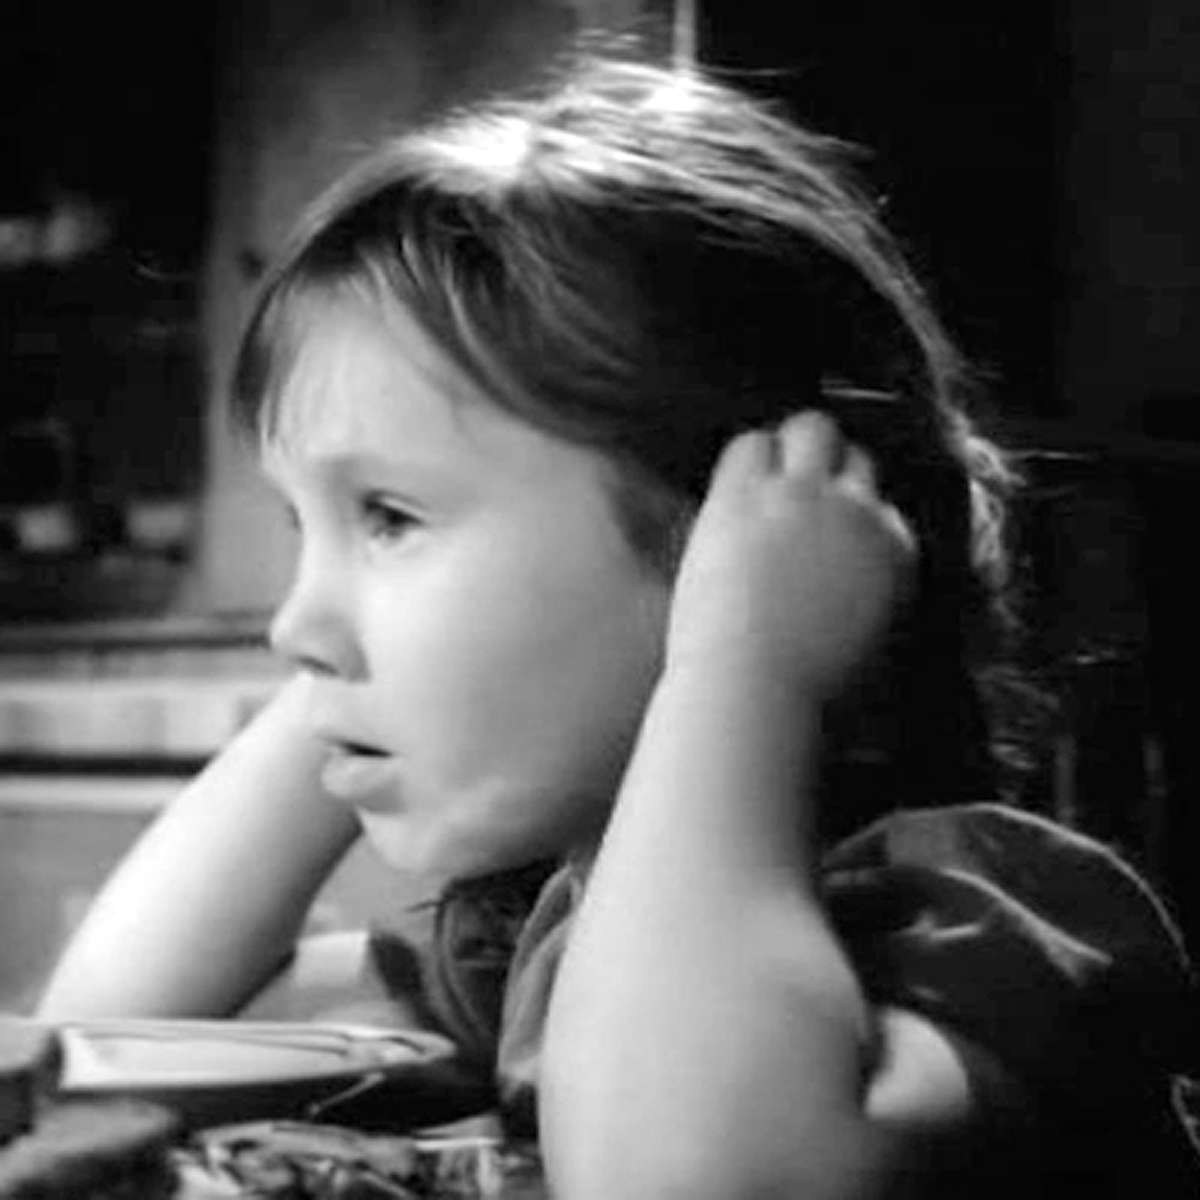 Алена Рыбникова в фильме «Им покоряется небо», 1963 г.  В шестилетнем возрасте Алена снялась вместе с отцом в ленте «Им покоряется небо». Девочка исполнила роль Иришки – дочери главного героя, летчика-испытателя, которого сыграл ее папа.  